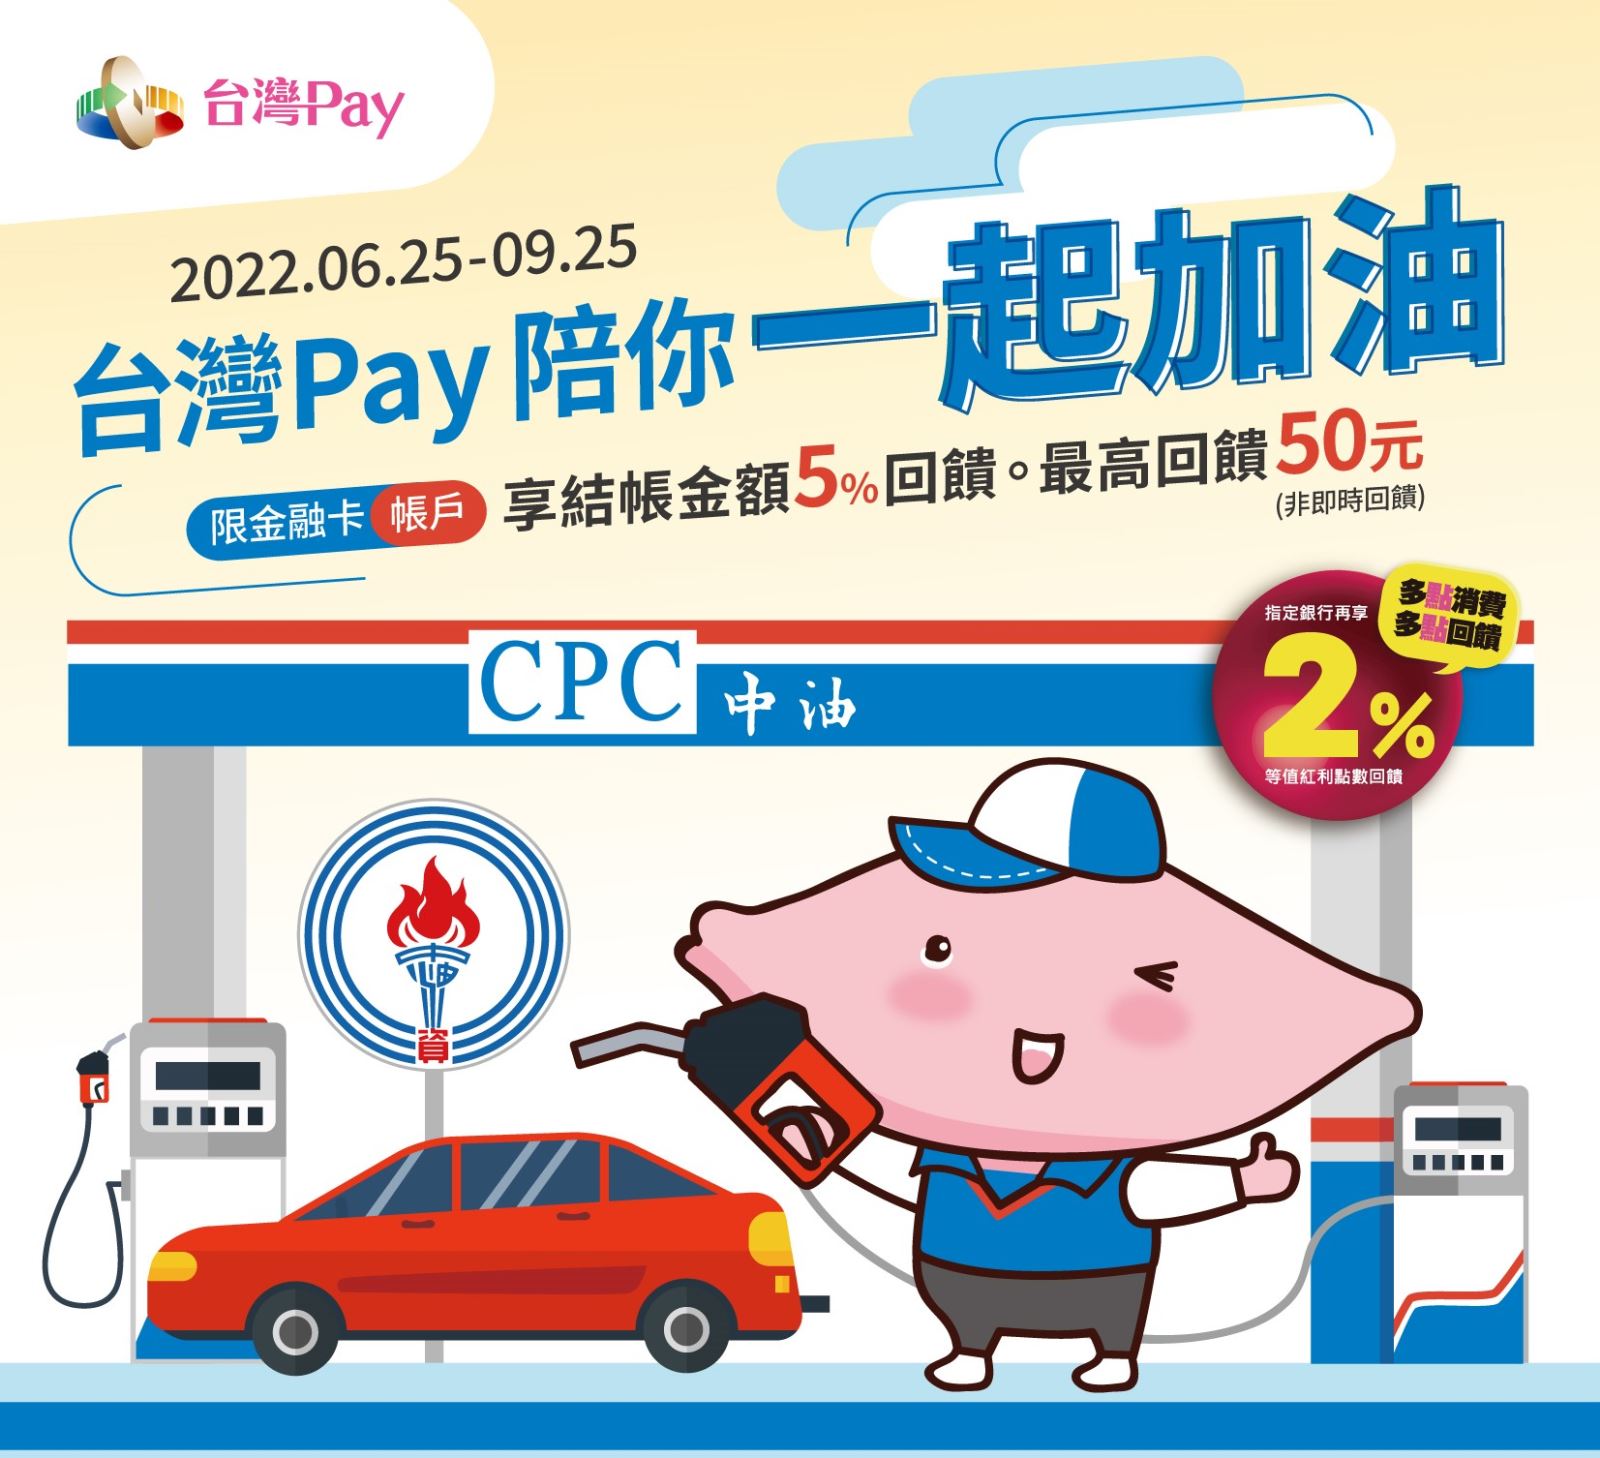 台灣Pay陪你一起加油。出示台灣Pay付款碼 可享單筆交易金額5%回饋(此圖片為本優惠活動主要視覺，活動內容請參考活動辦法說明文字)